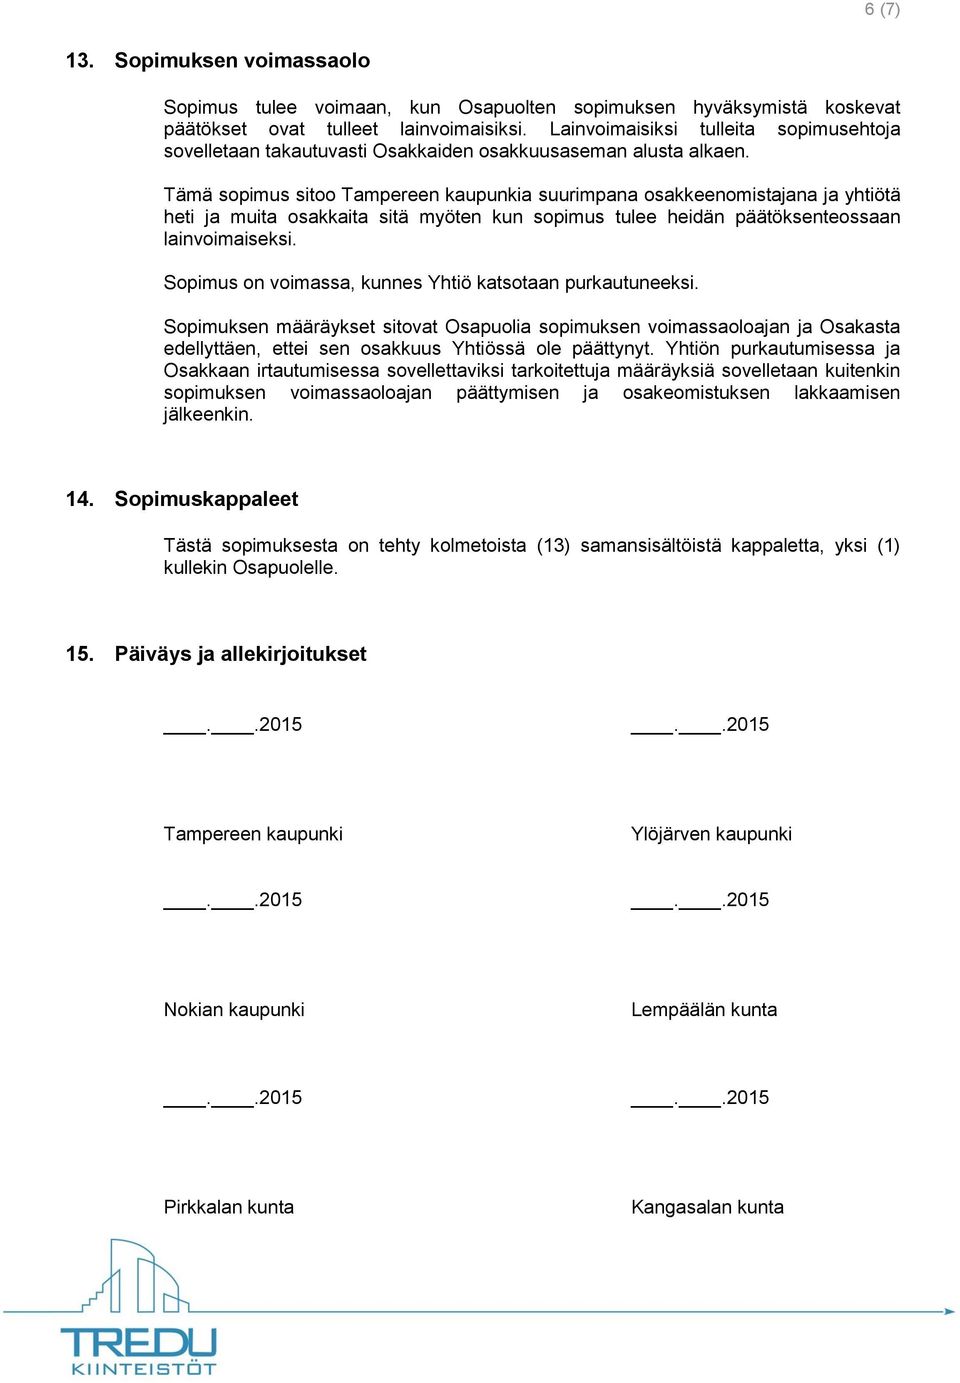 Tämä sopimus sitoo Tampereen kaupunkia suurimpana osakkeenomistajana ja yhtiötä heti ja muita osakkaita sitä myöten kun sopimus tulee heidän päätöksenteossaan lainvoimaiseksi.